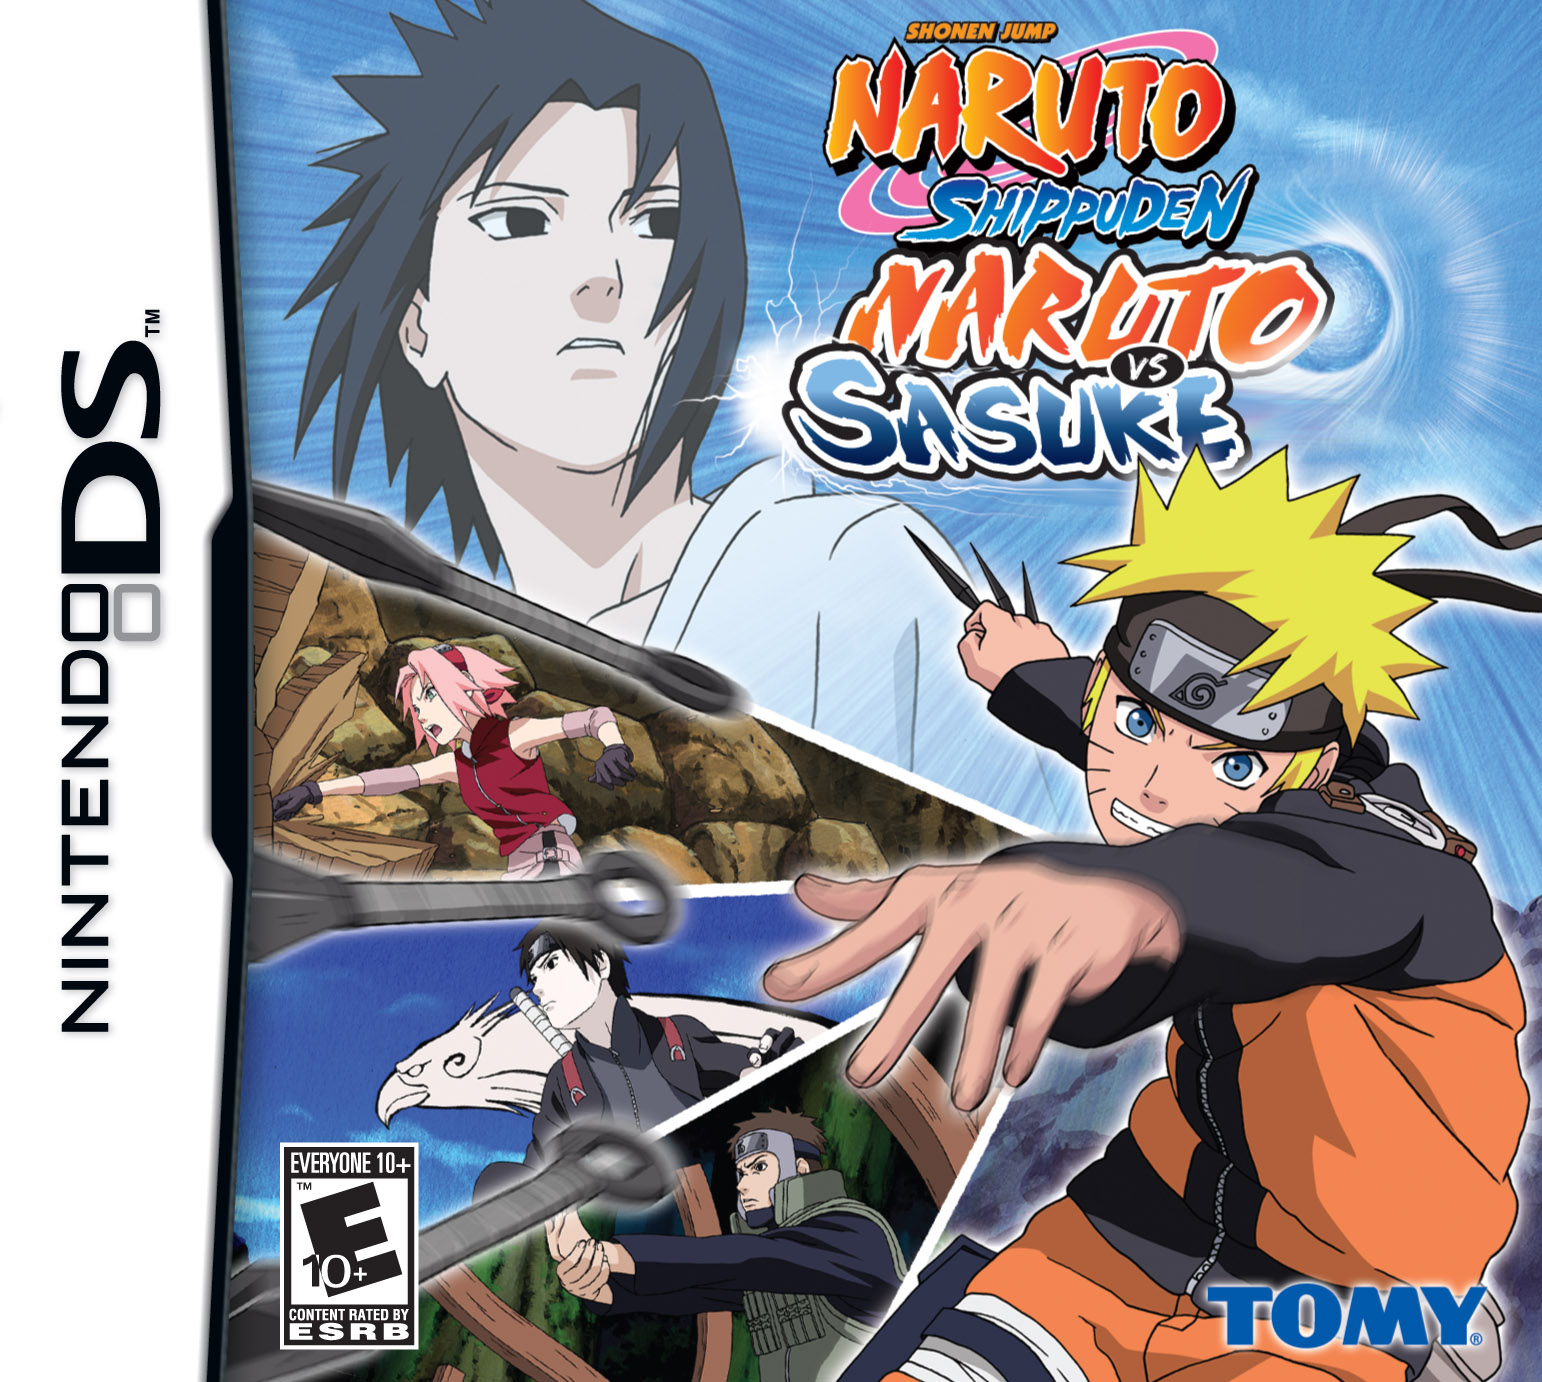 Naruto Uzumaki  Naruto uzumaki shippuden, Naruto shippuden sasuke